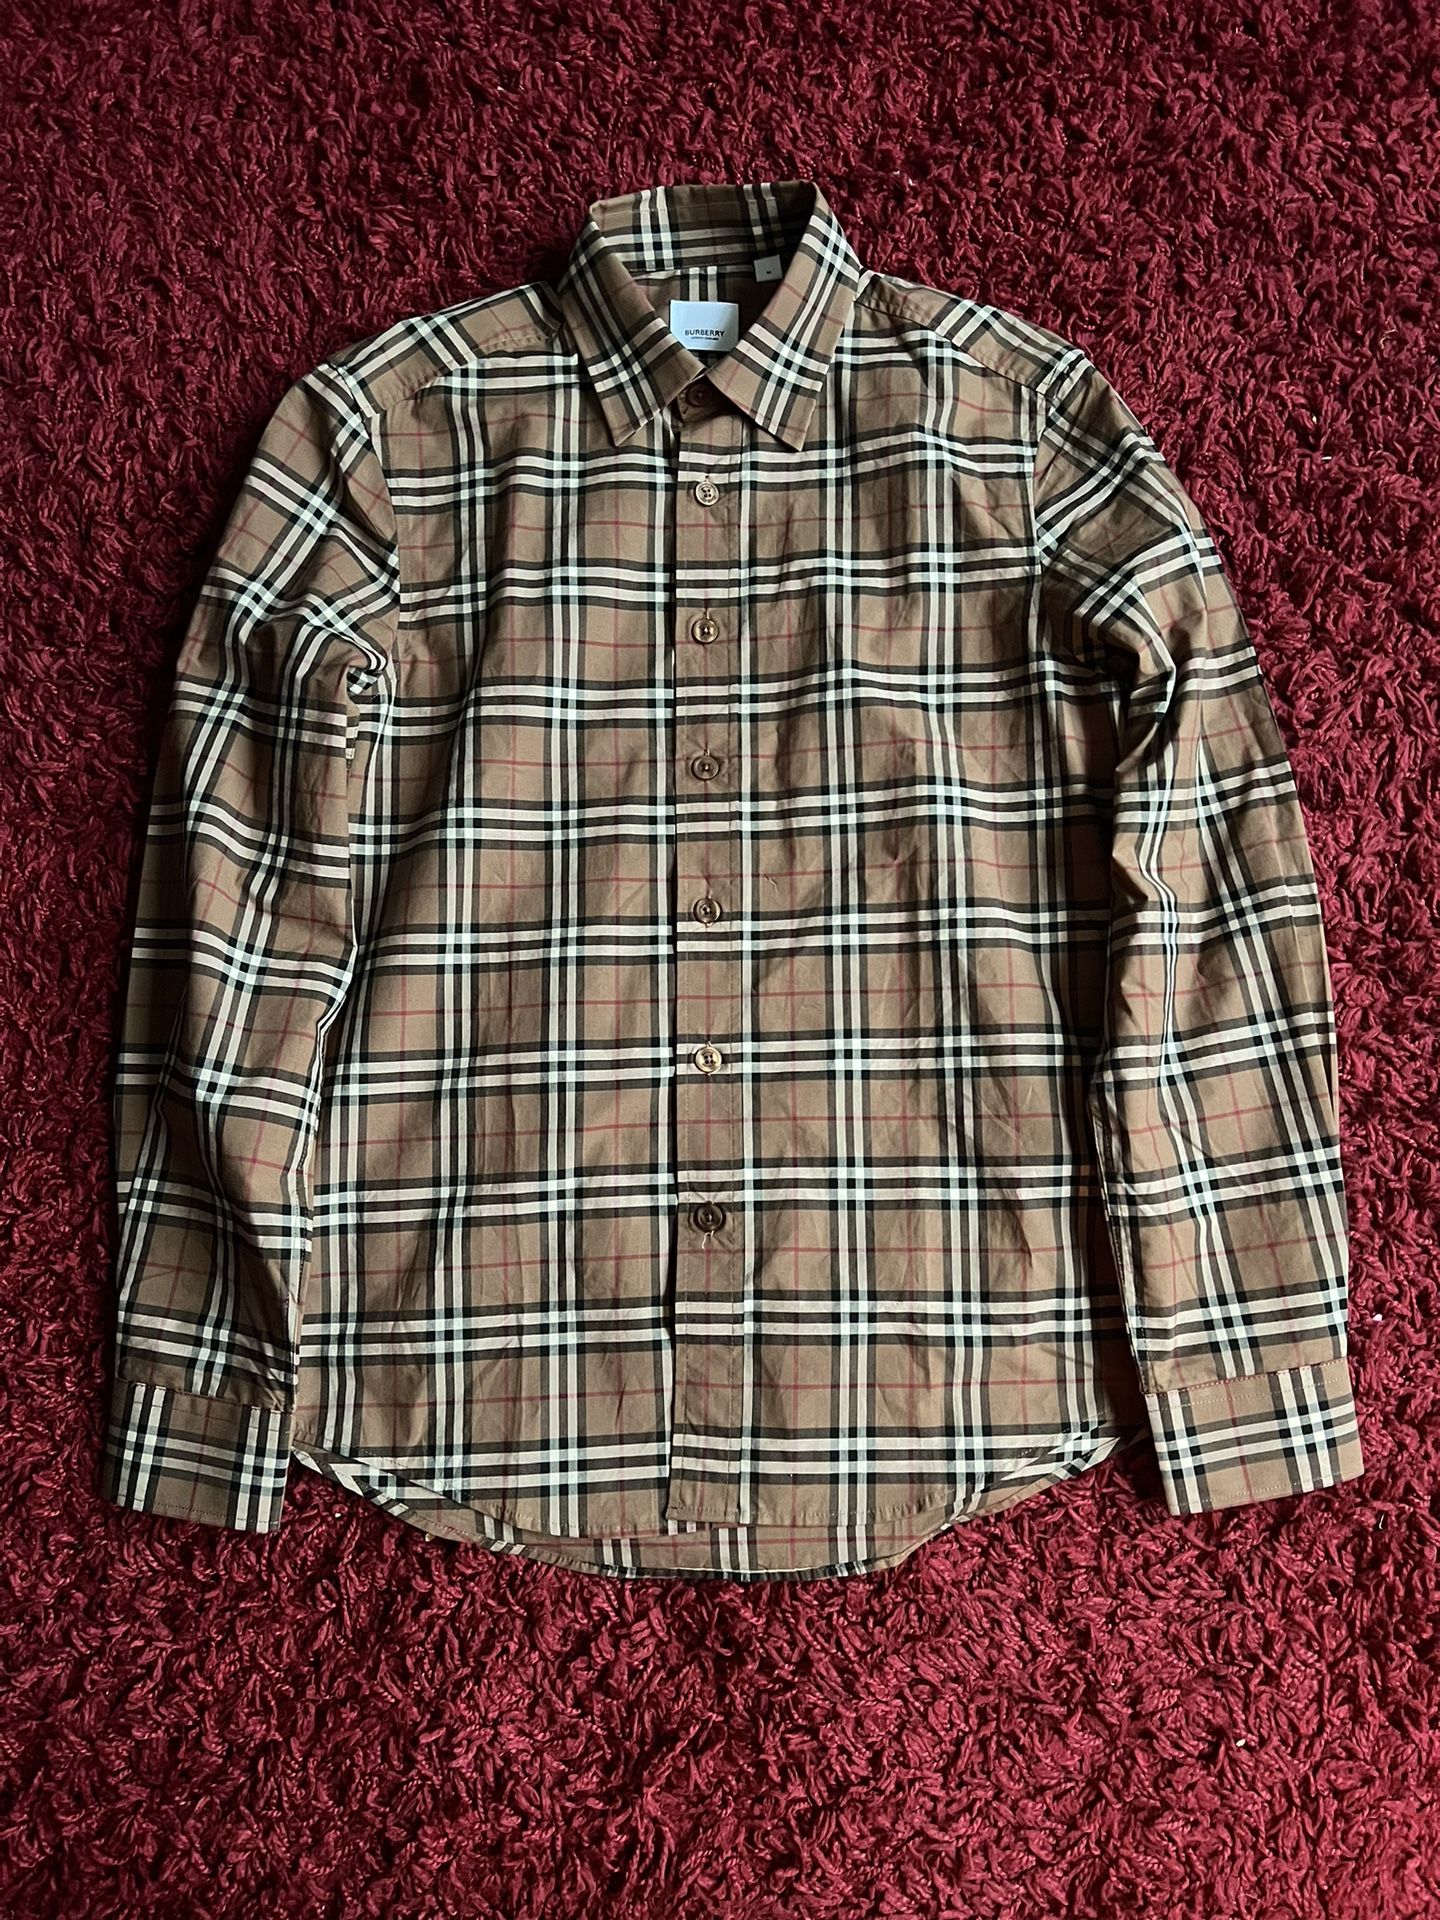 Burberry Checkered Dress Shirt